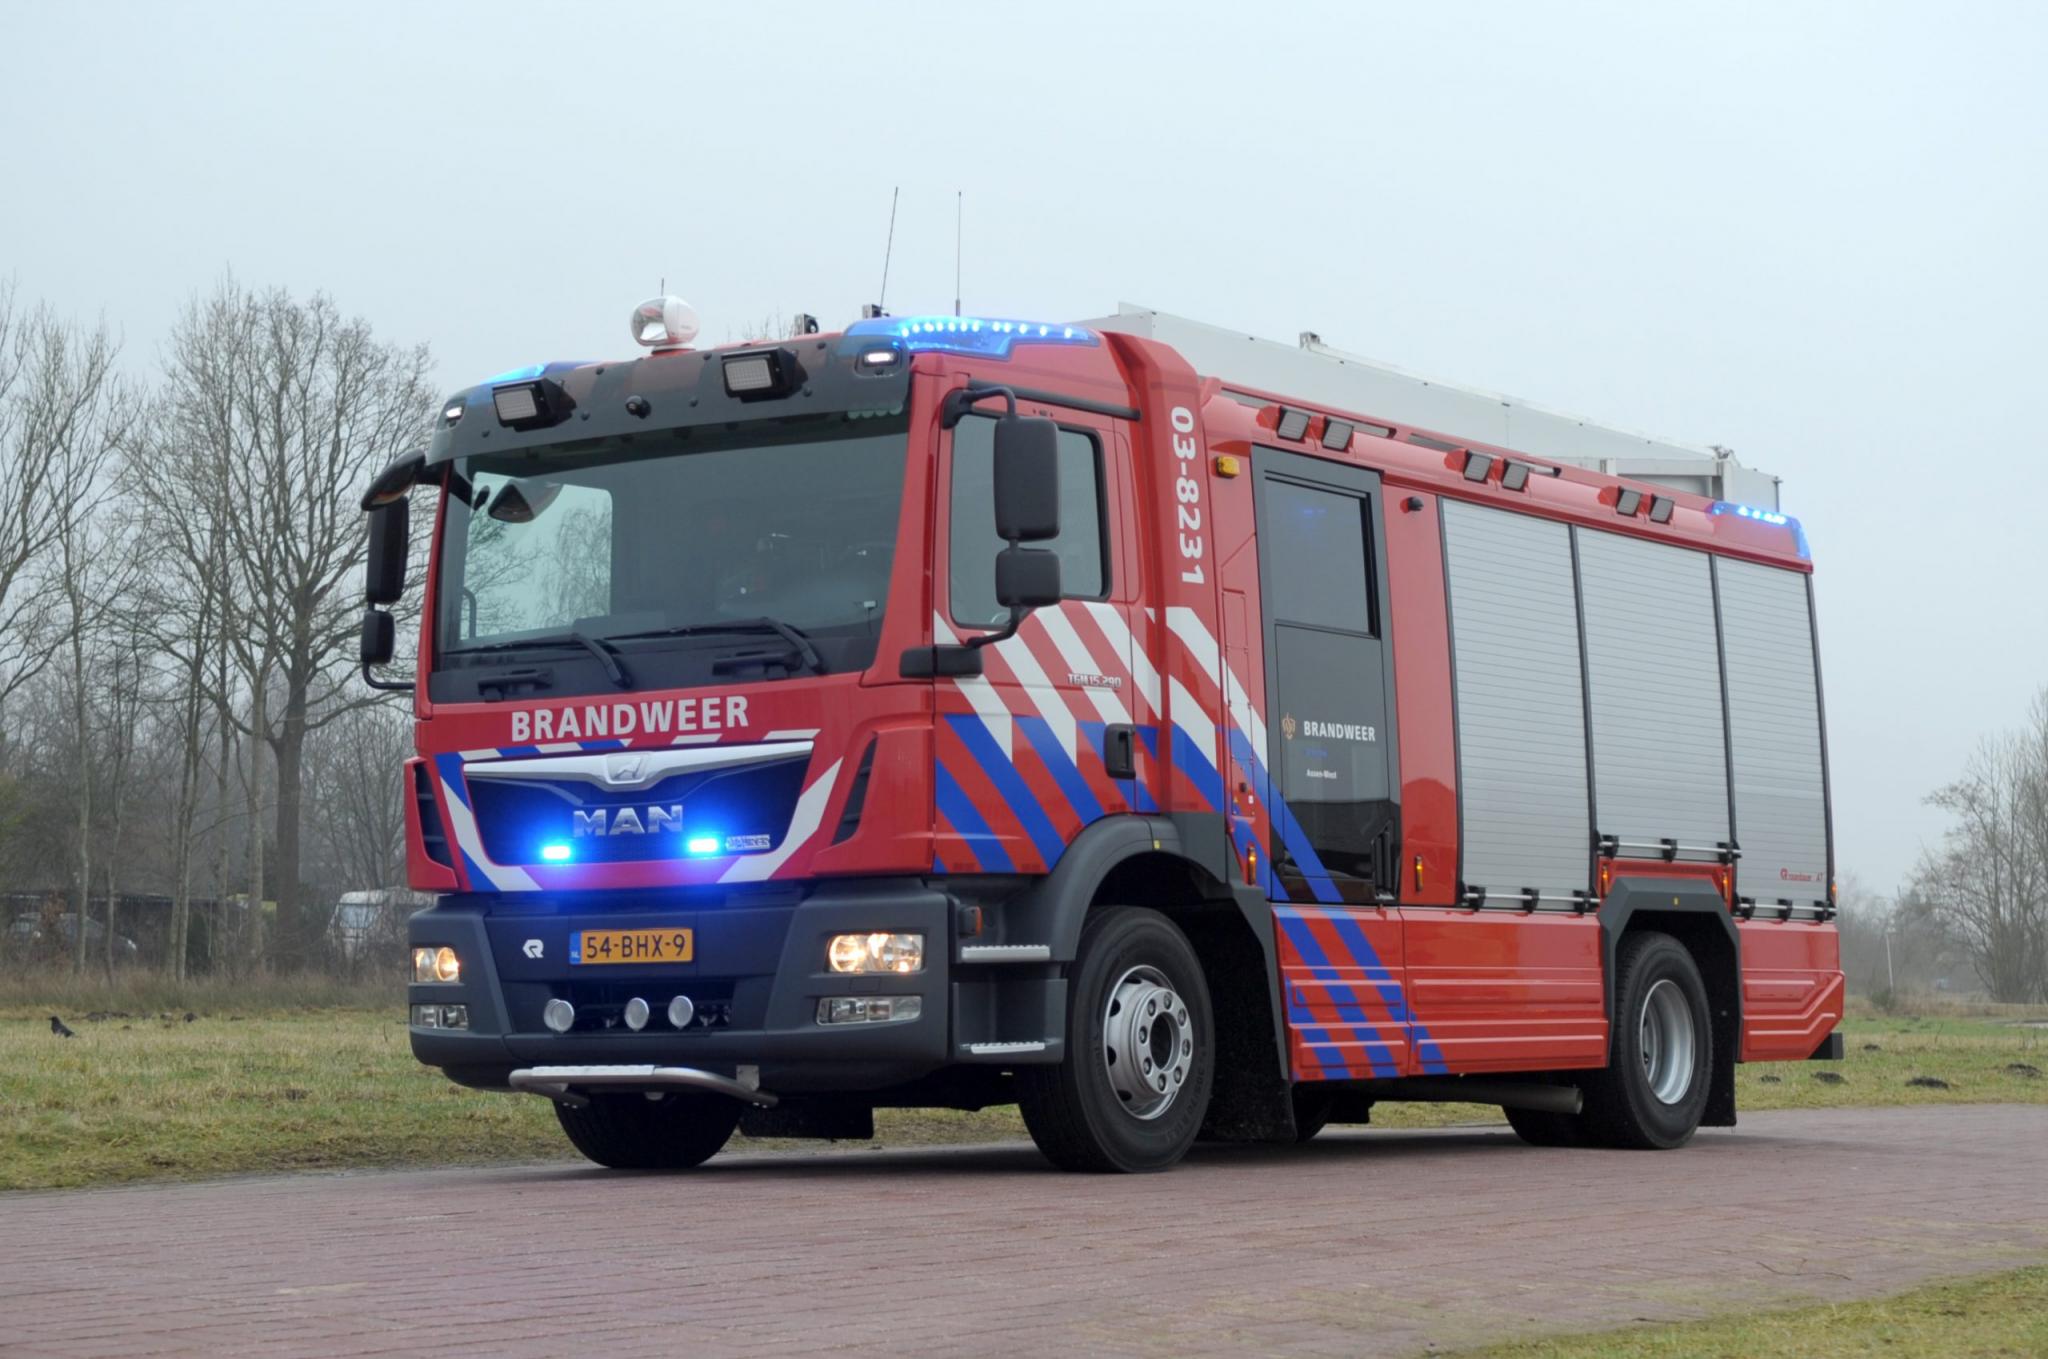 MAN Fire Truck from Drenthe